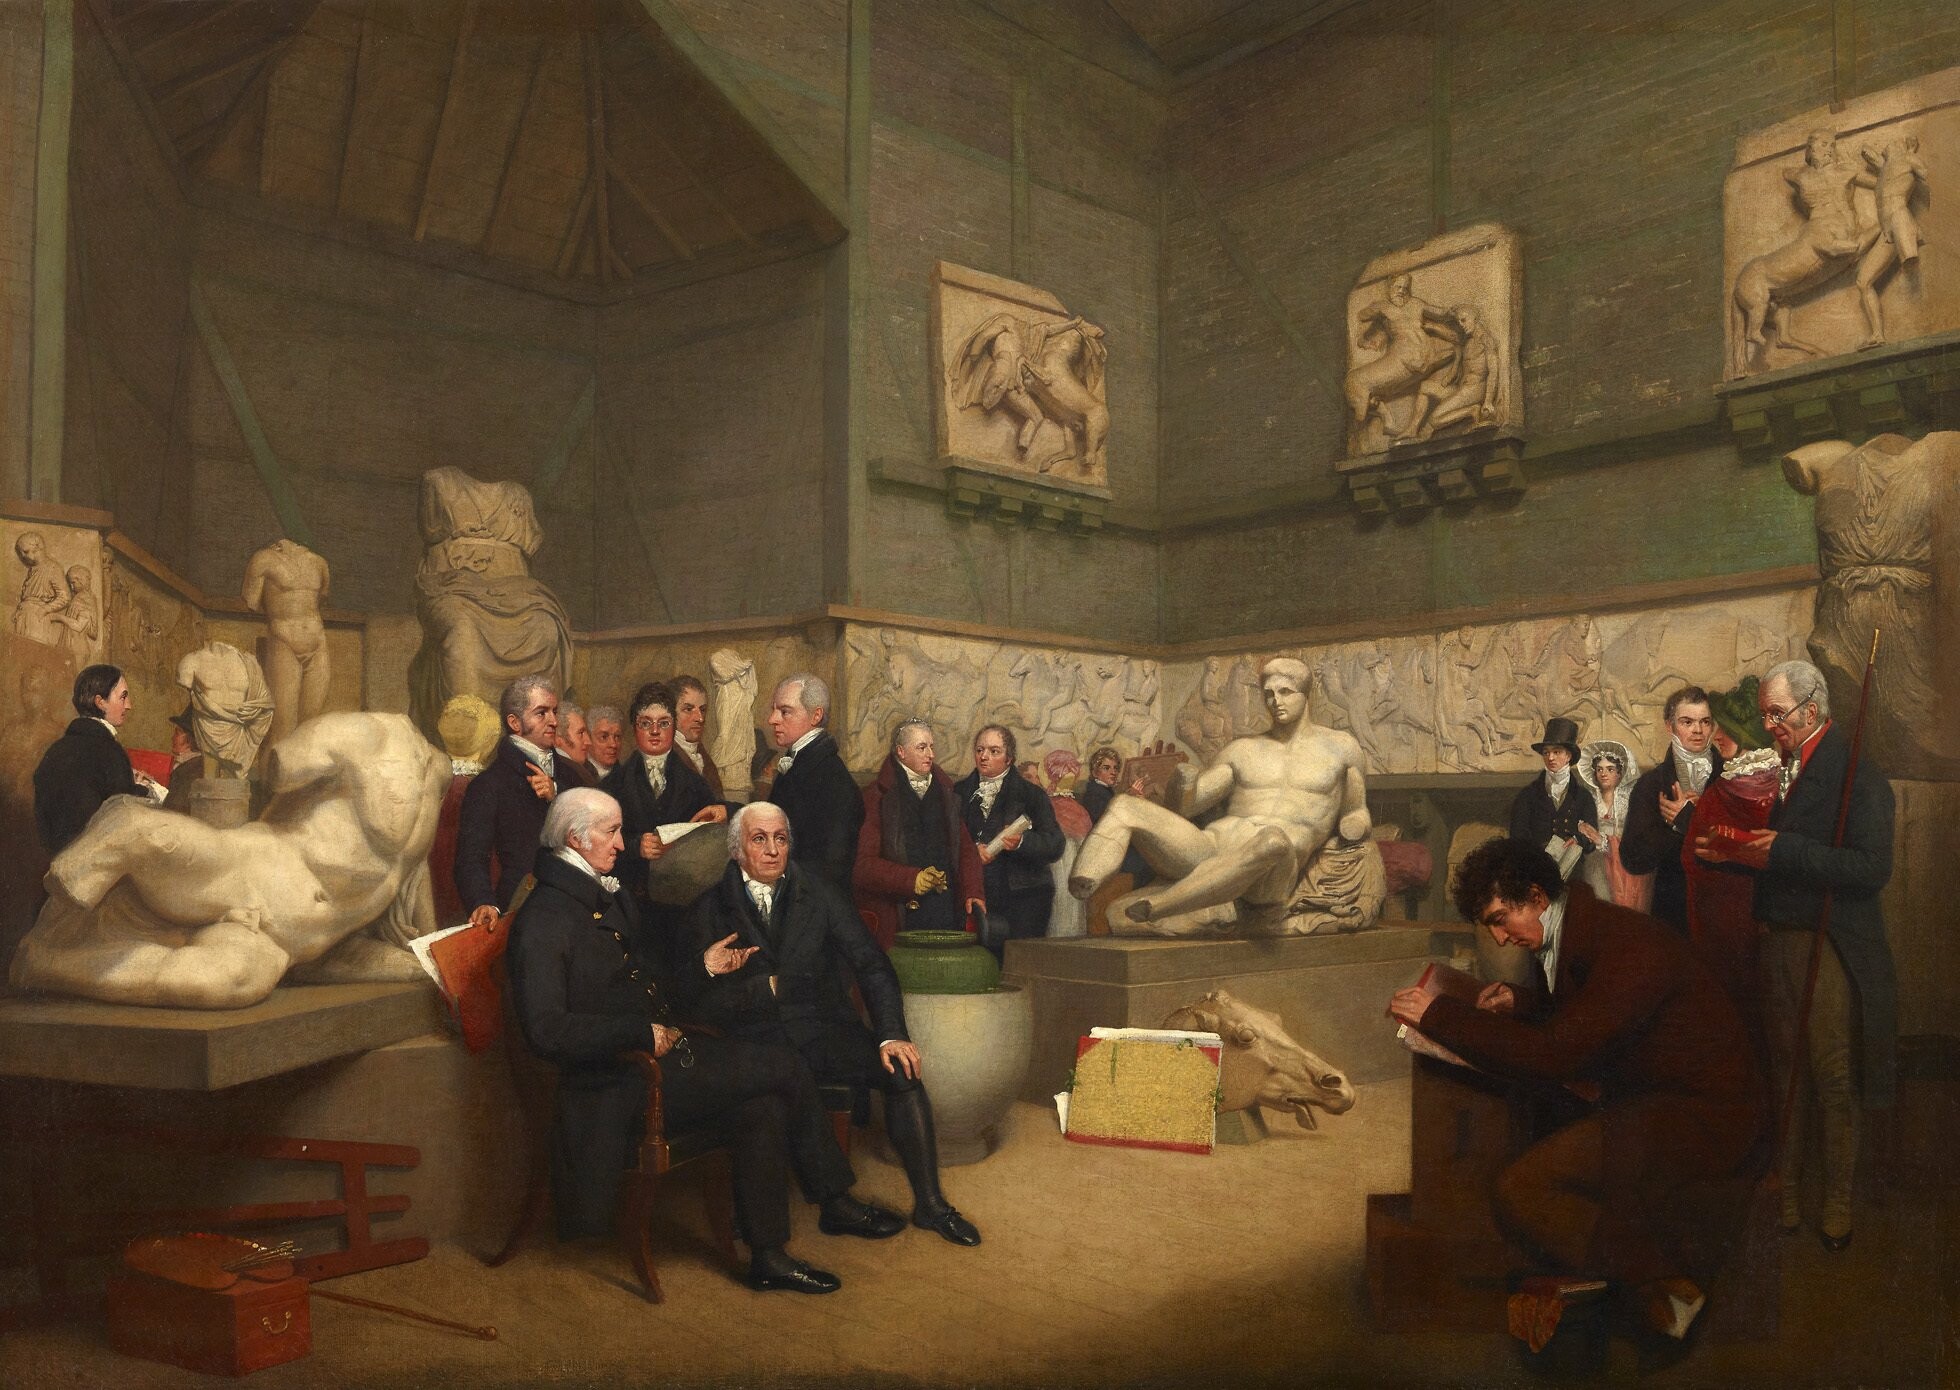 Άρτσιμπαλντ Άρτσερ, Η προσωρινή αίθουσα για τα Γλυπτά του Έλγιν, το 1819